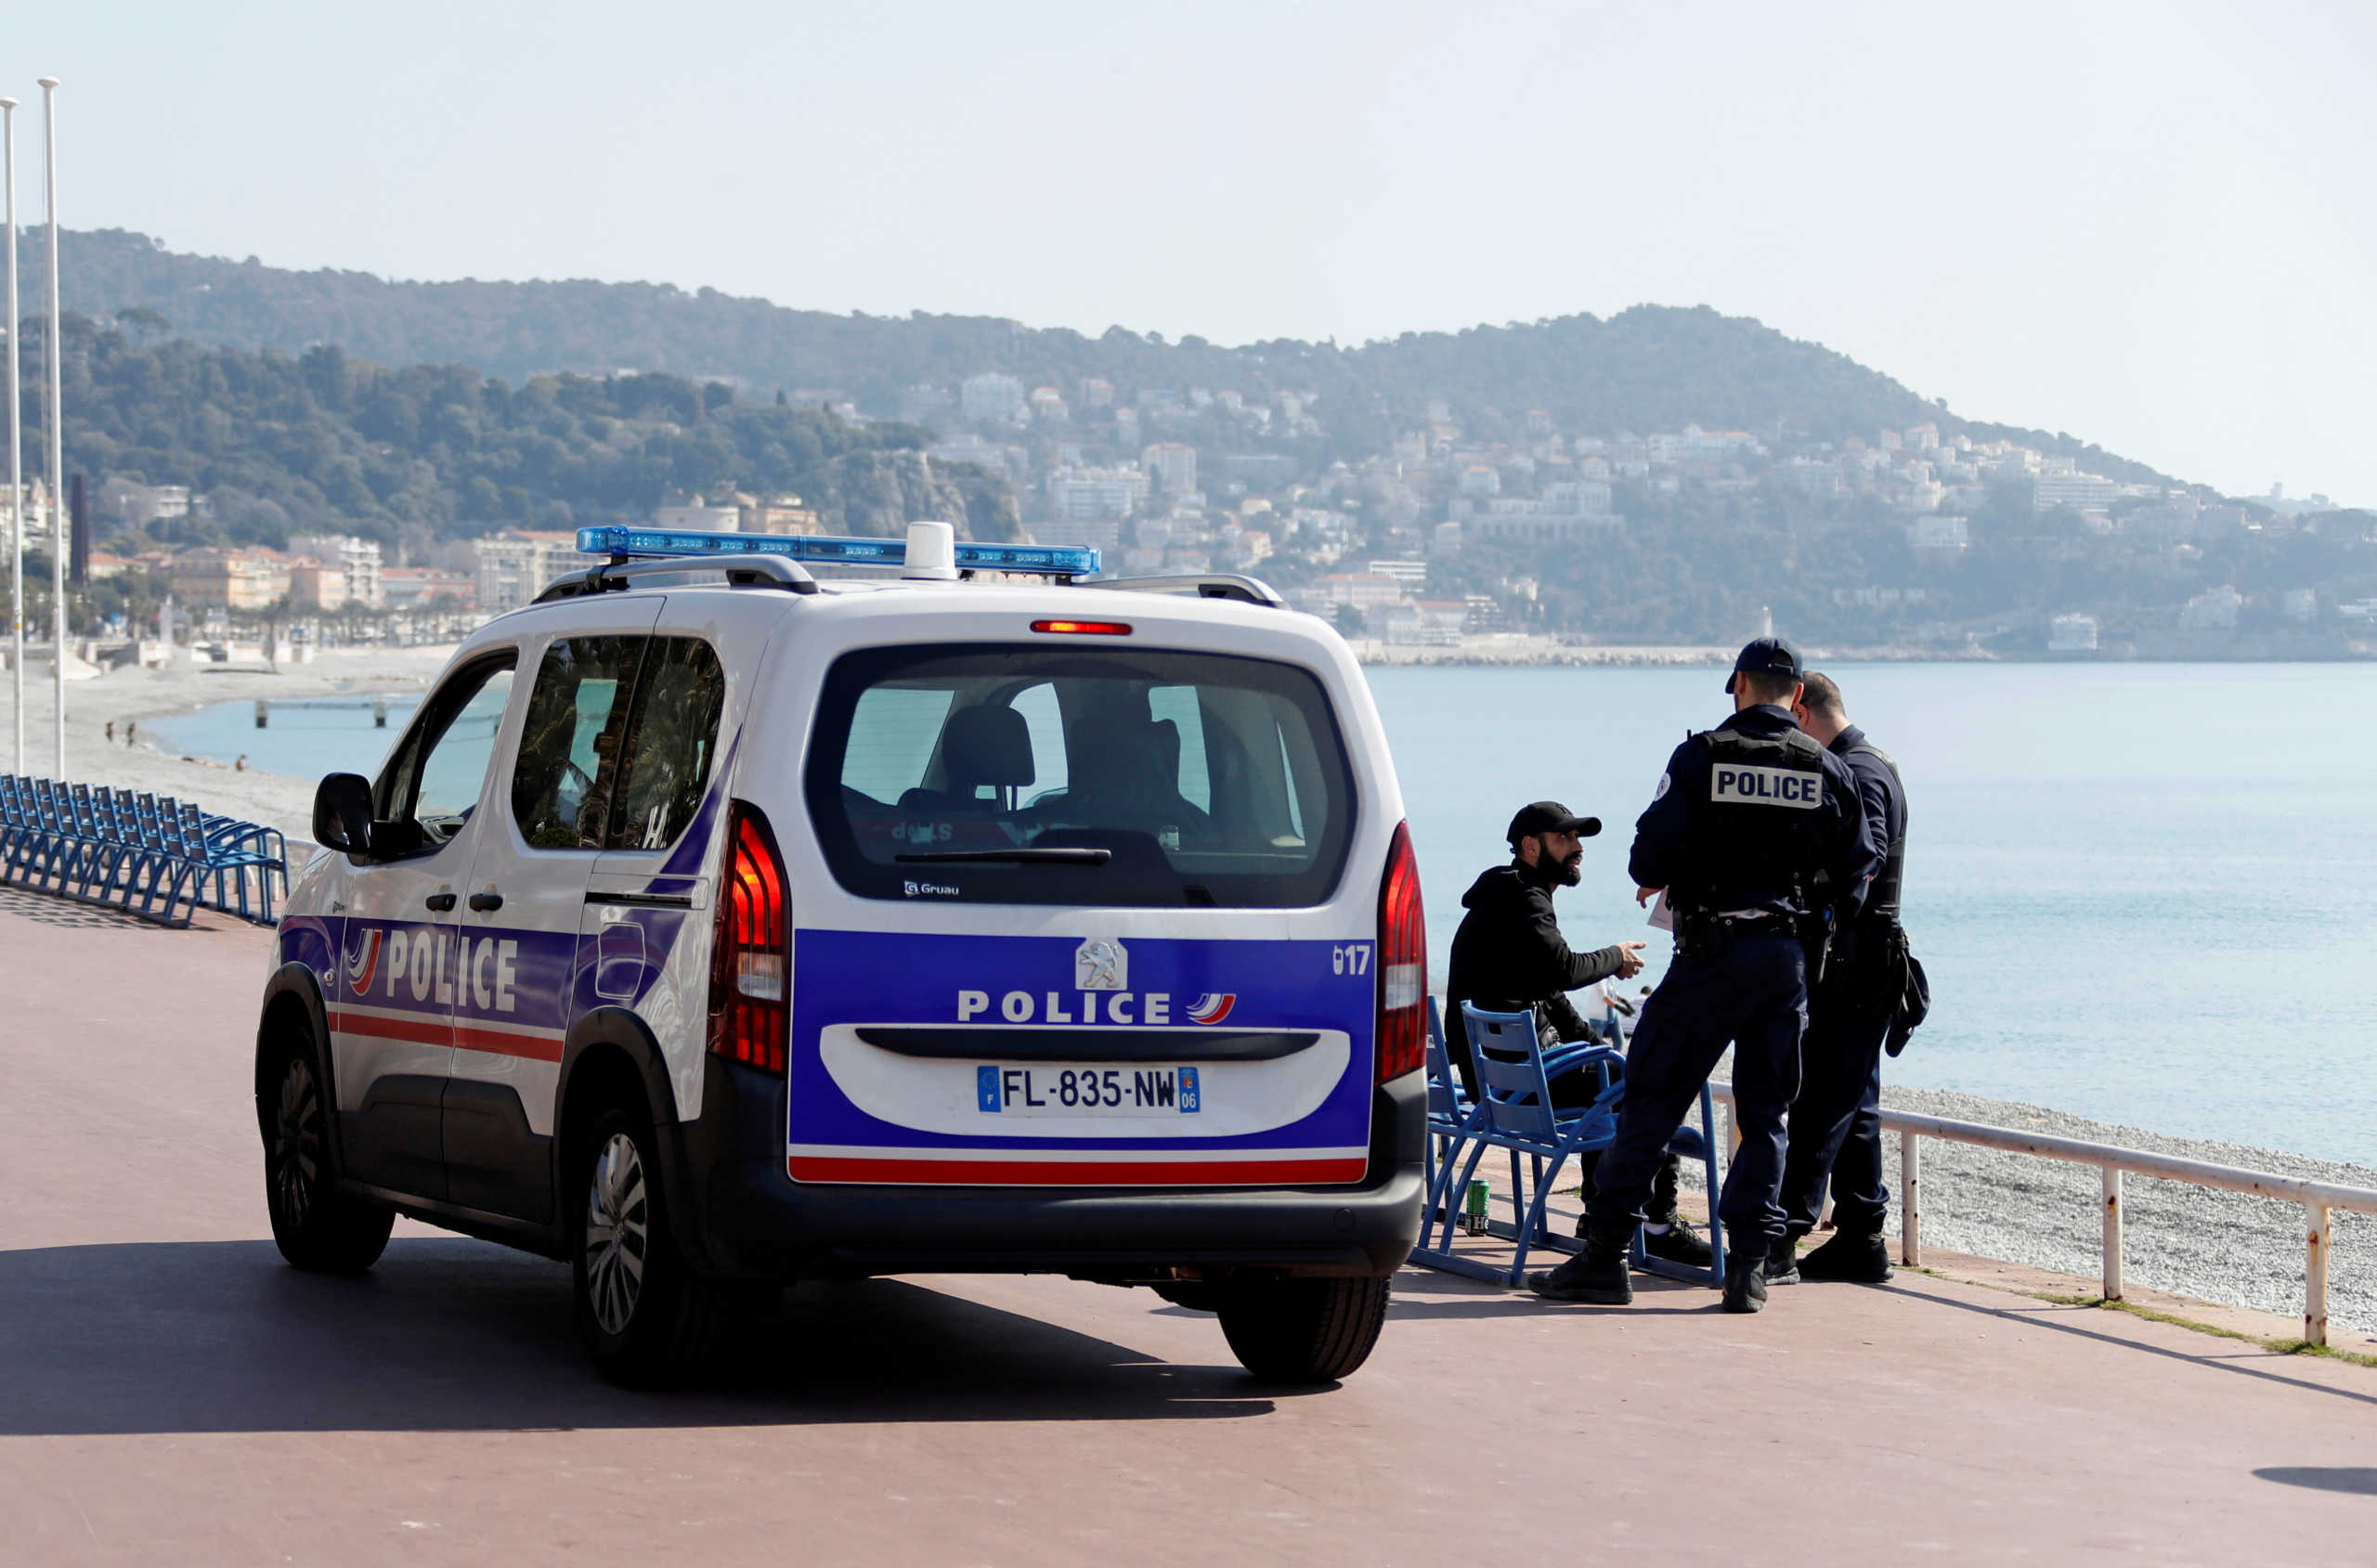 Δύο νεκροί και επτά τραυματίες σε επίθεση με μαχαίρι στη νοτιοανατολική Γαλλία